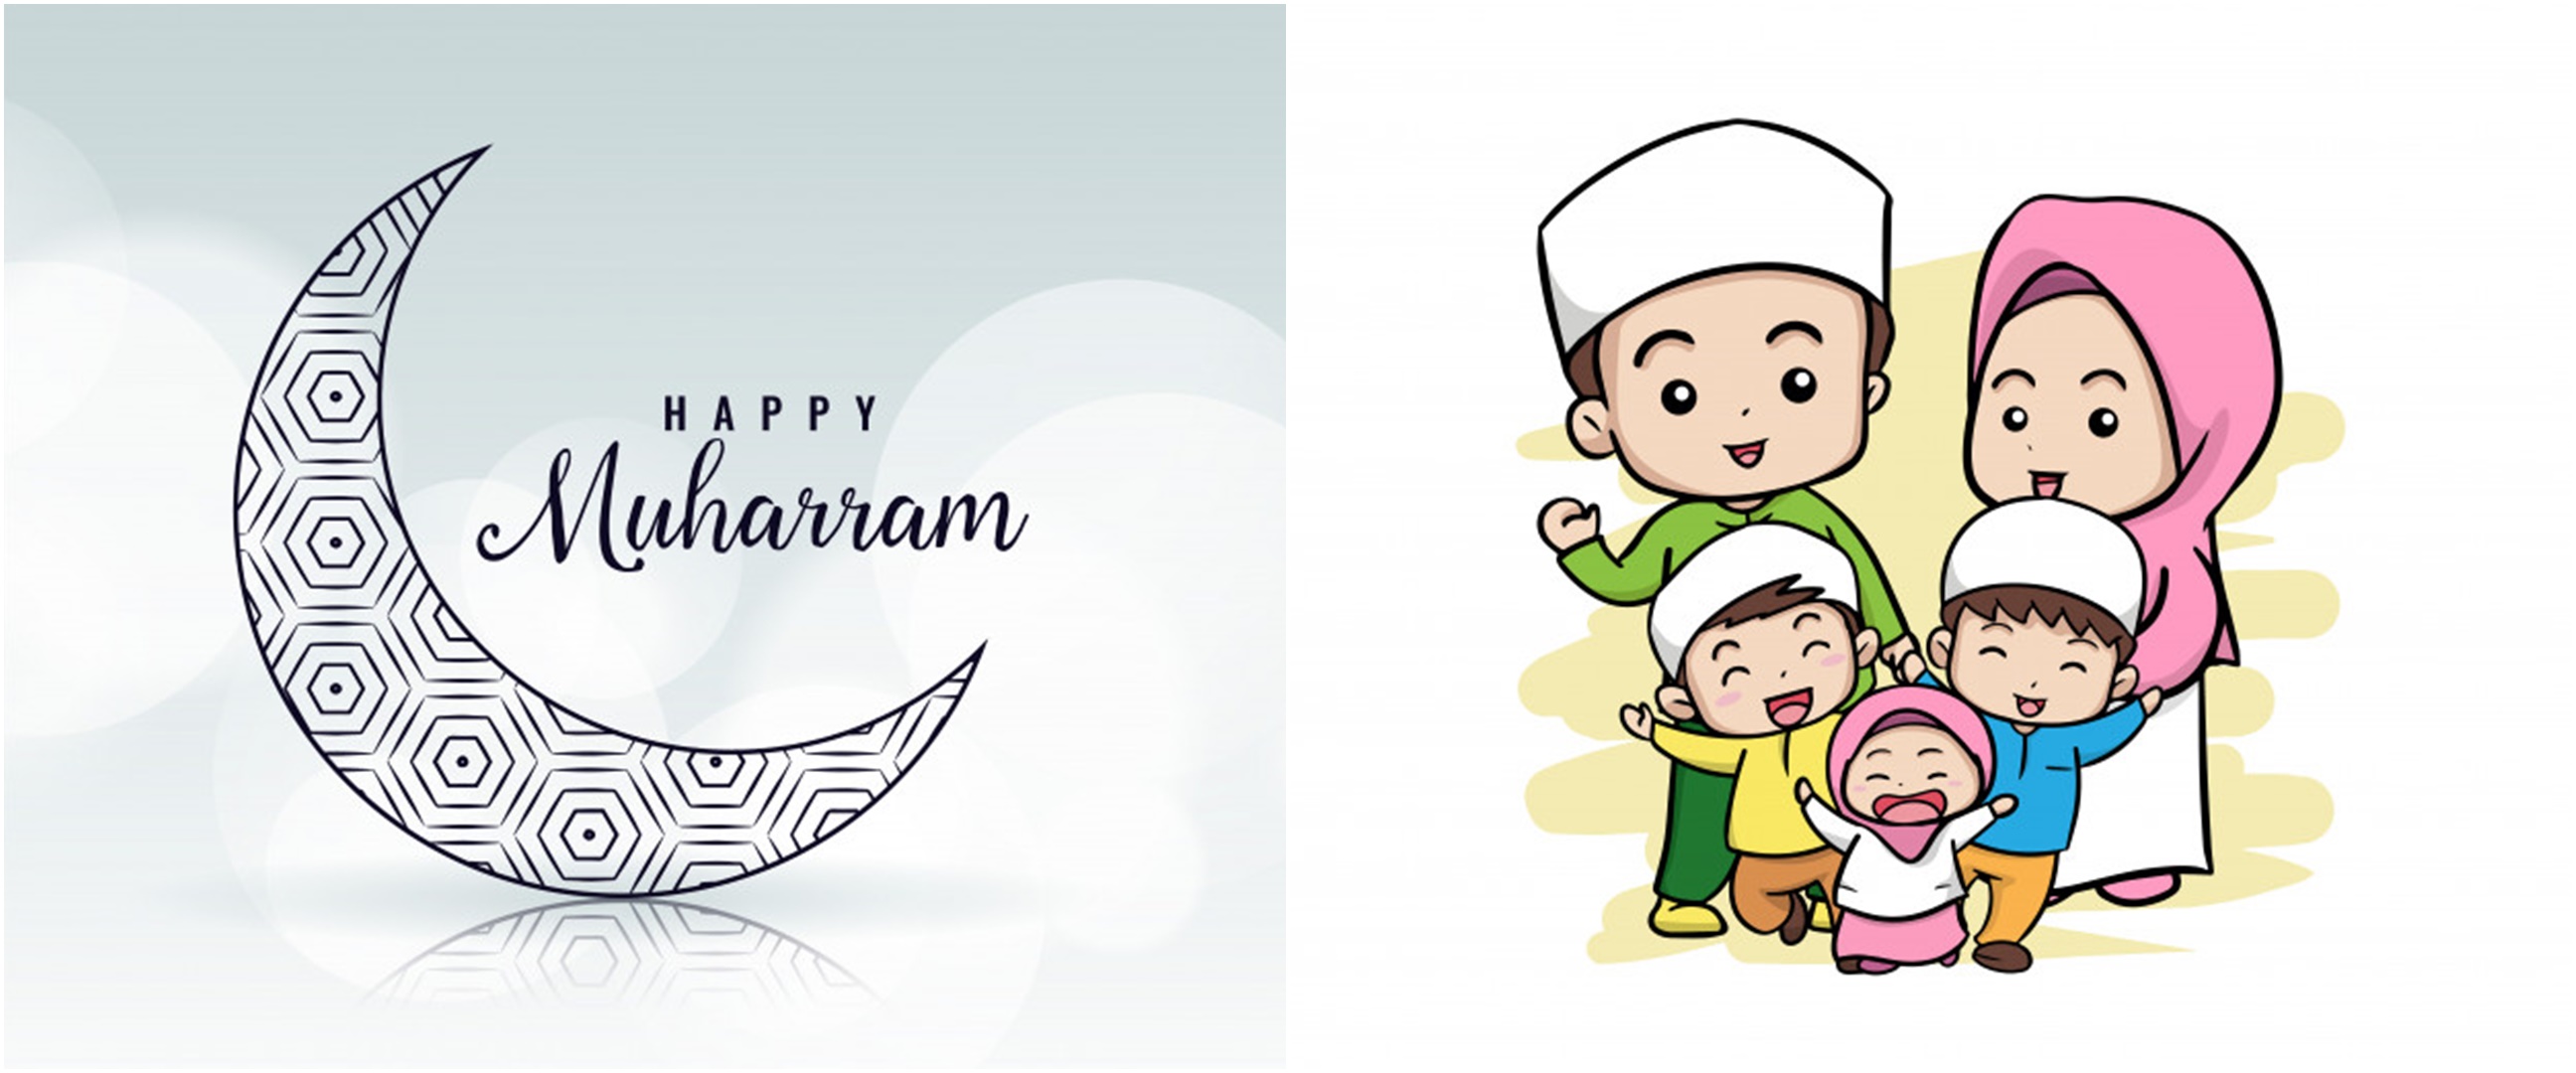 Amalan utama bulan Muharram bagi umat Islam